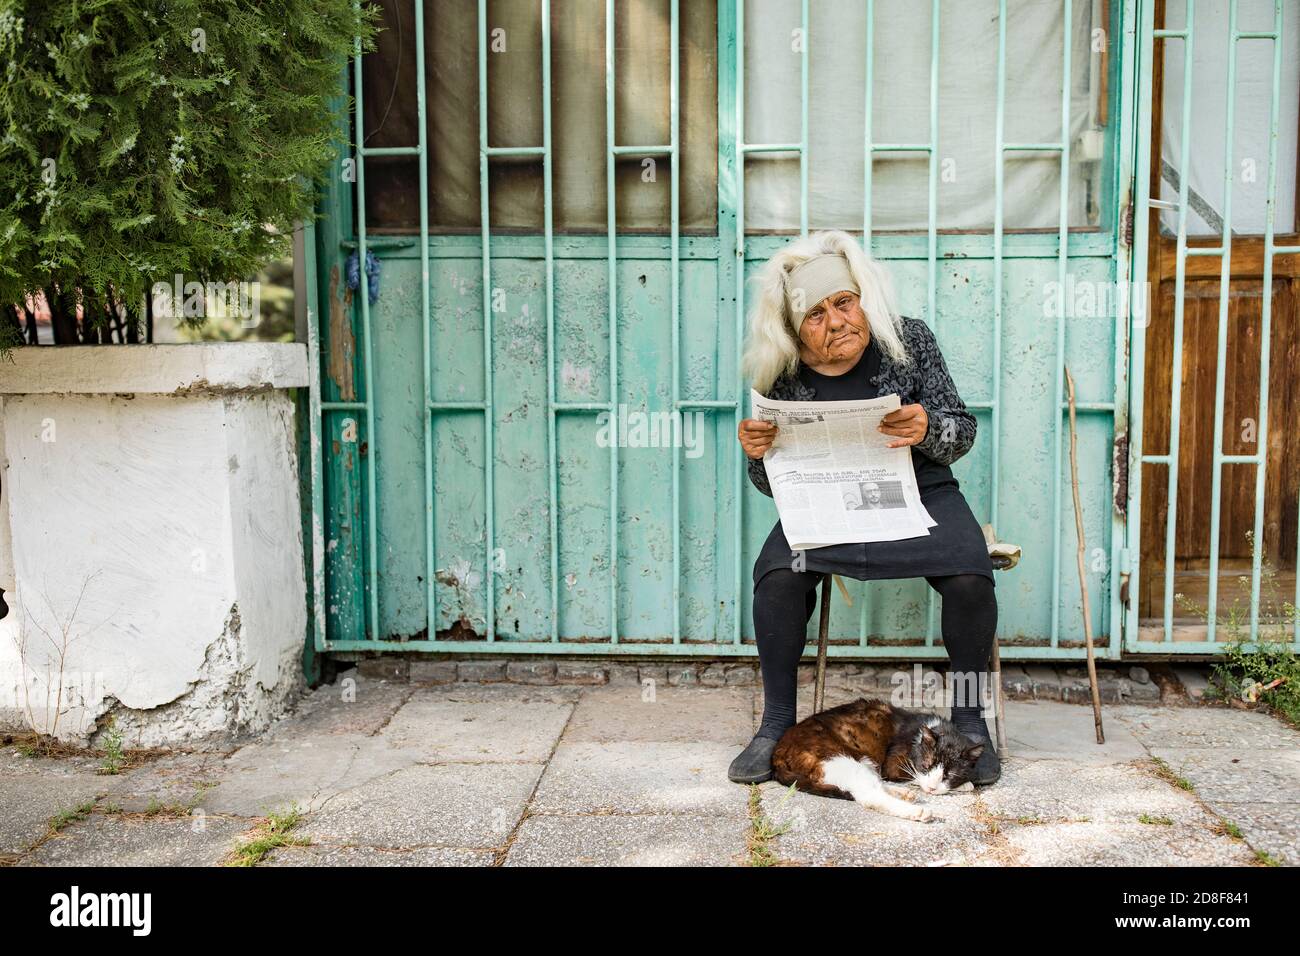 Eine ältere Frau liest die Zeitung vor ihrer Haustür, während ihre Katze zu ihren Füßen in Mzcheta, Georgien, Kaukasus, Osteuropa schläft. Stockfoto